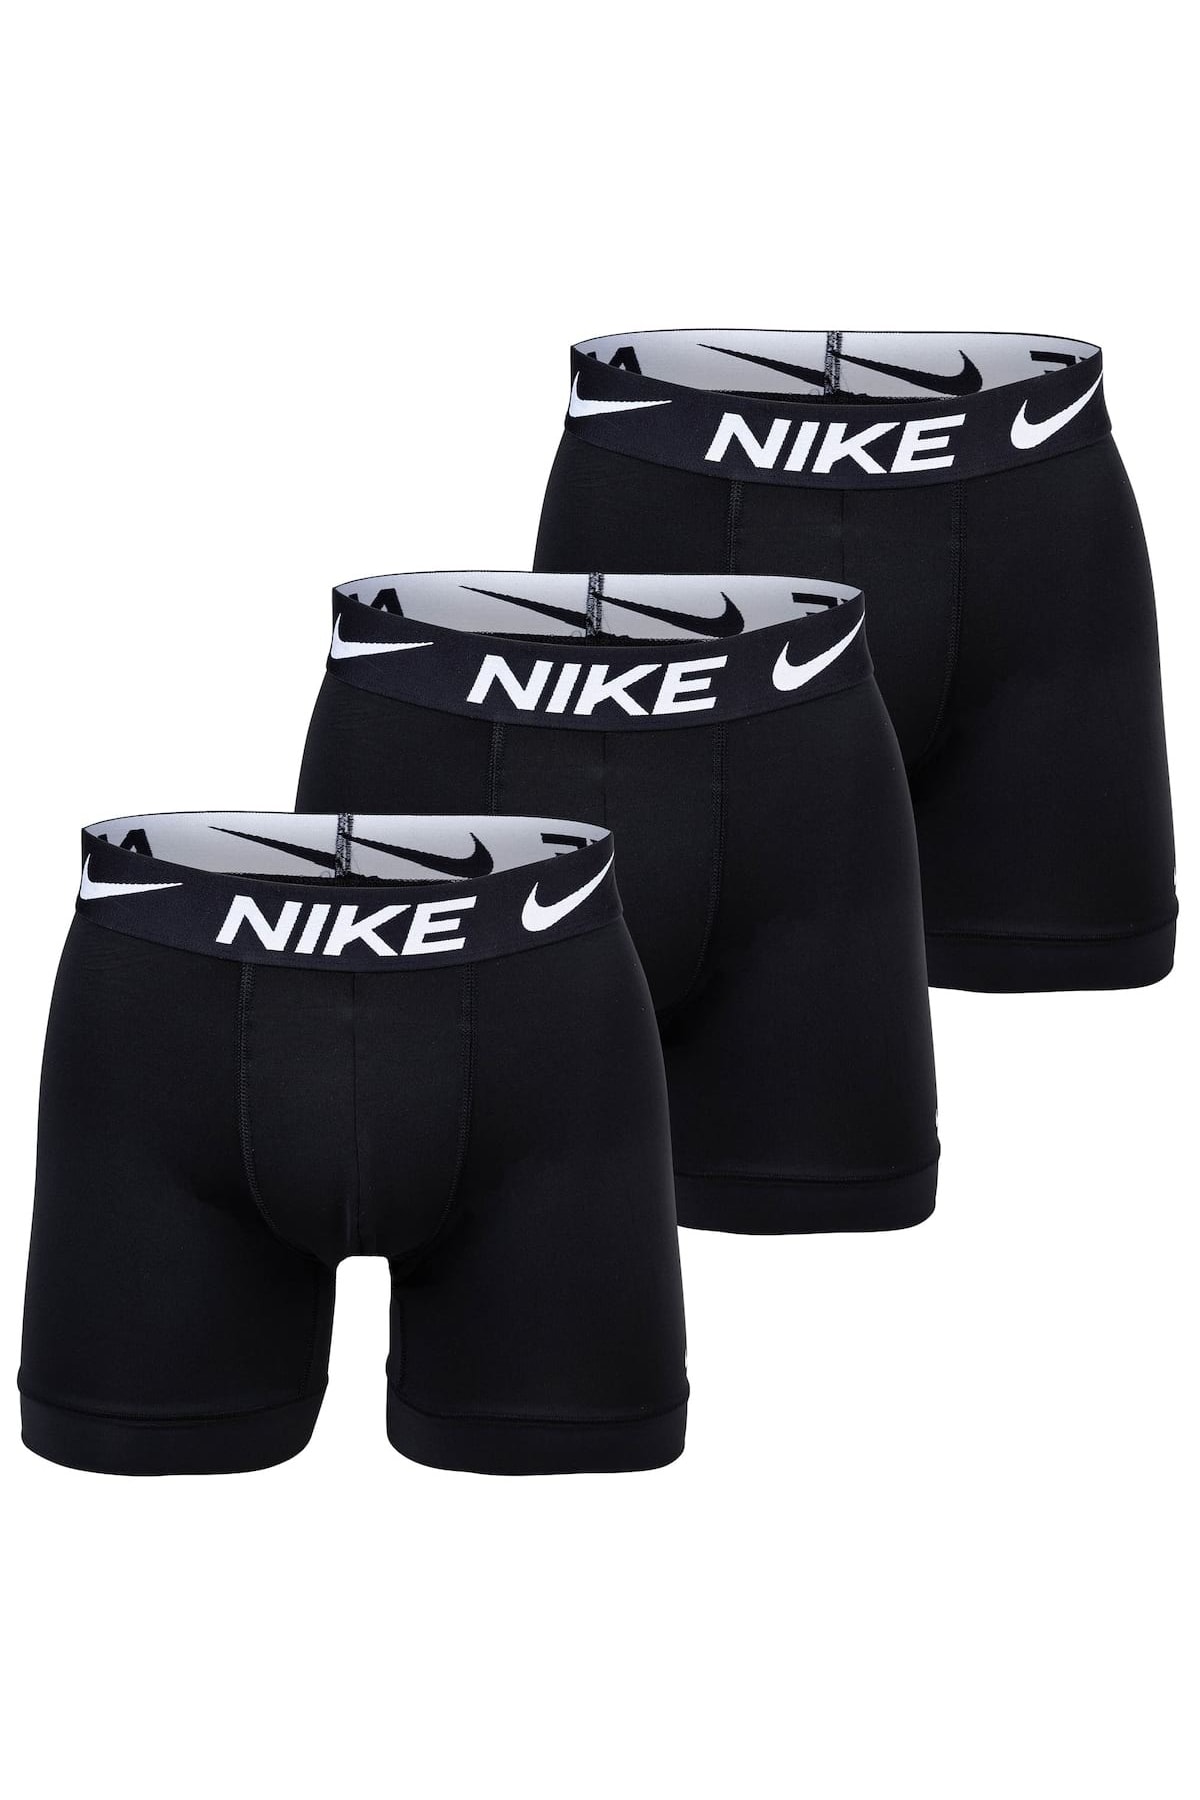 Nike Boxershorts Schwarz Unifarben FN6628